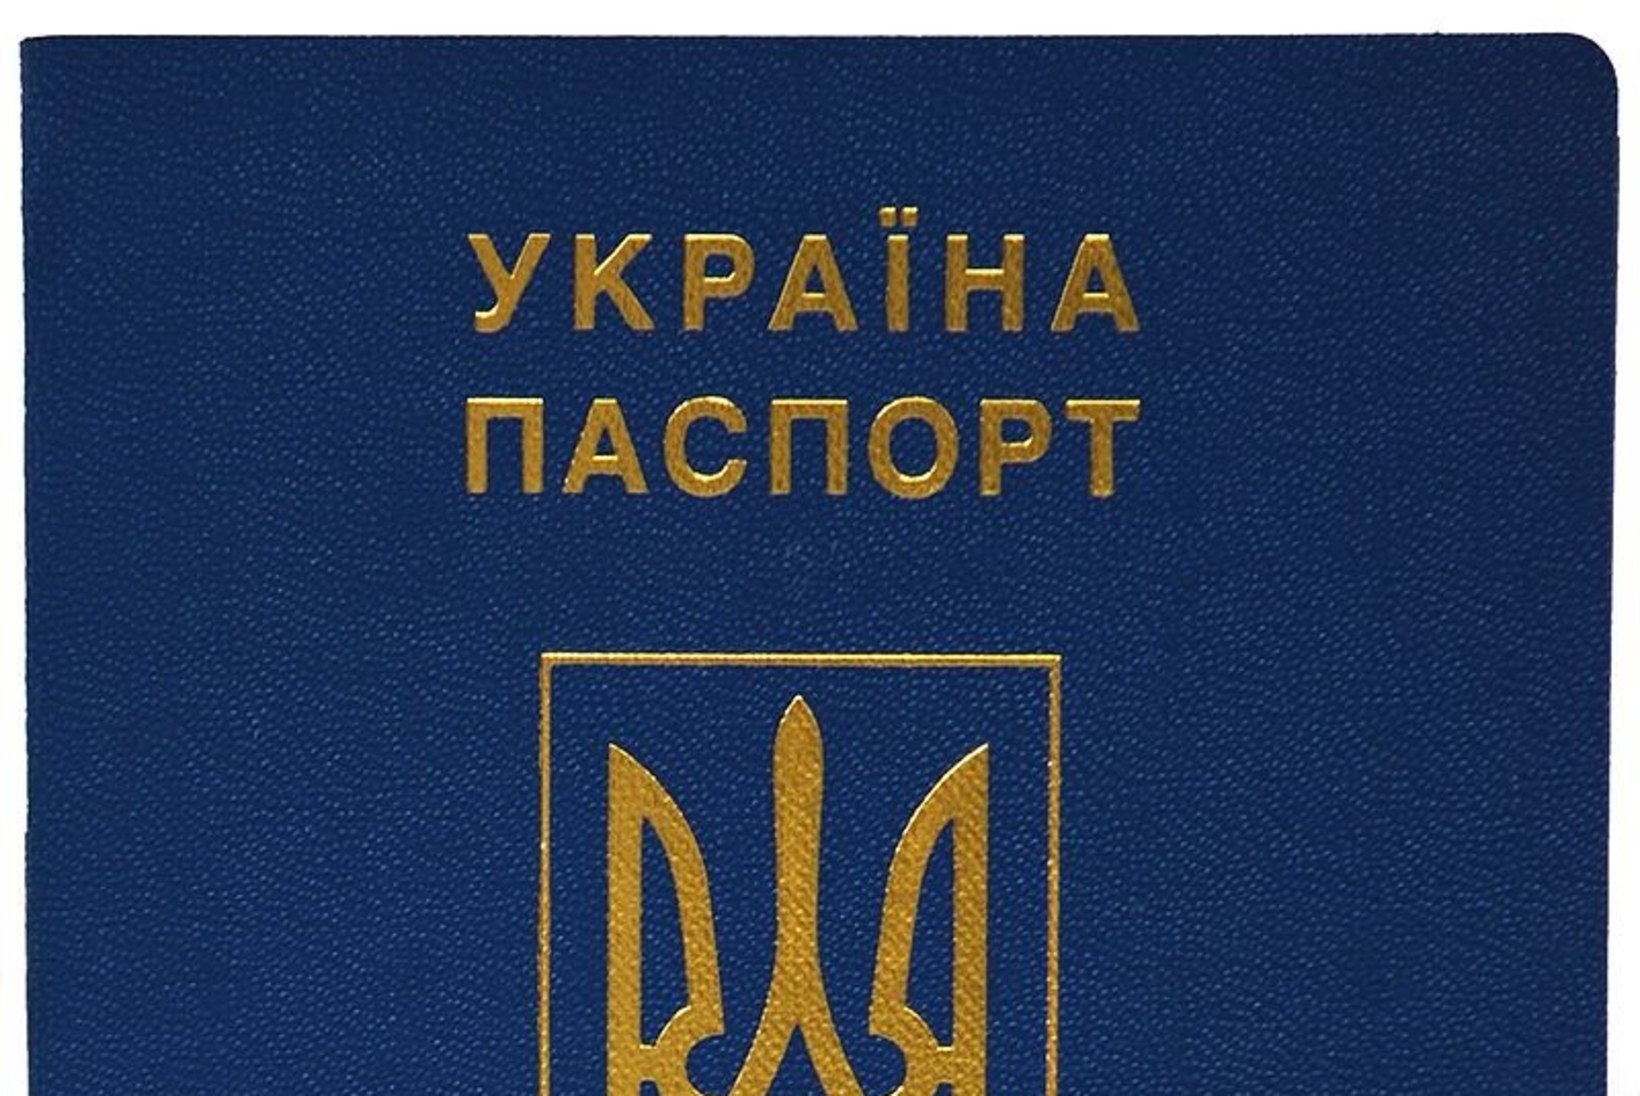 ÕL ROSTOVIS | Eesti pass ei huvita kedagi, kuid Ukraina oma kontrollitakse põhjalikult